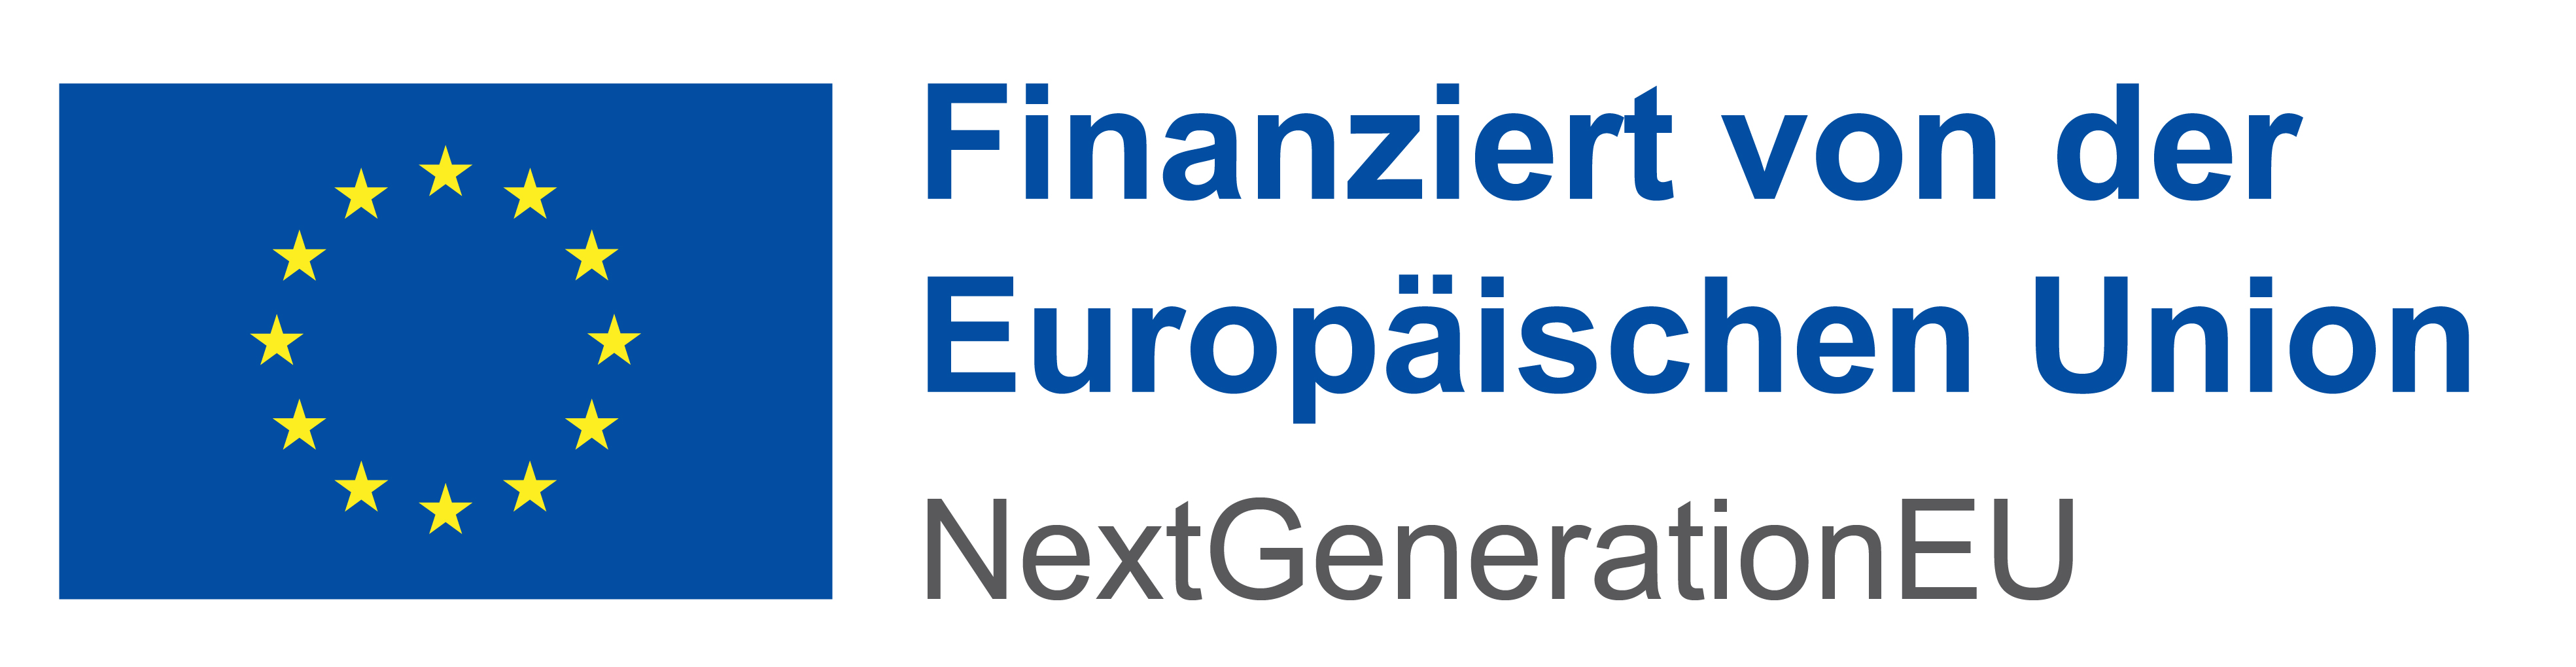 EU-Fahne mit Text: Finanziert von der Europäischen Union - NextGenerationEU